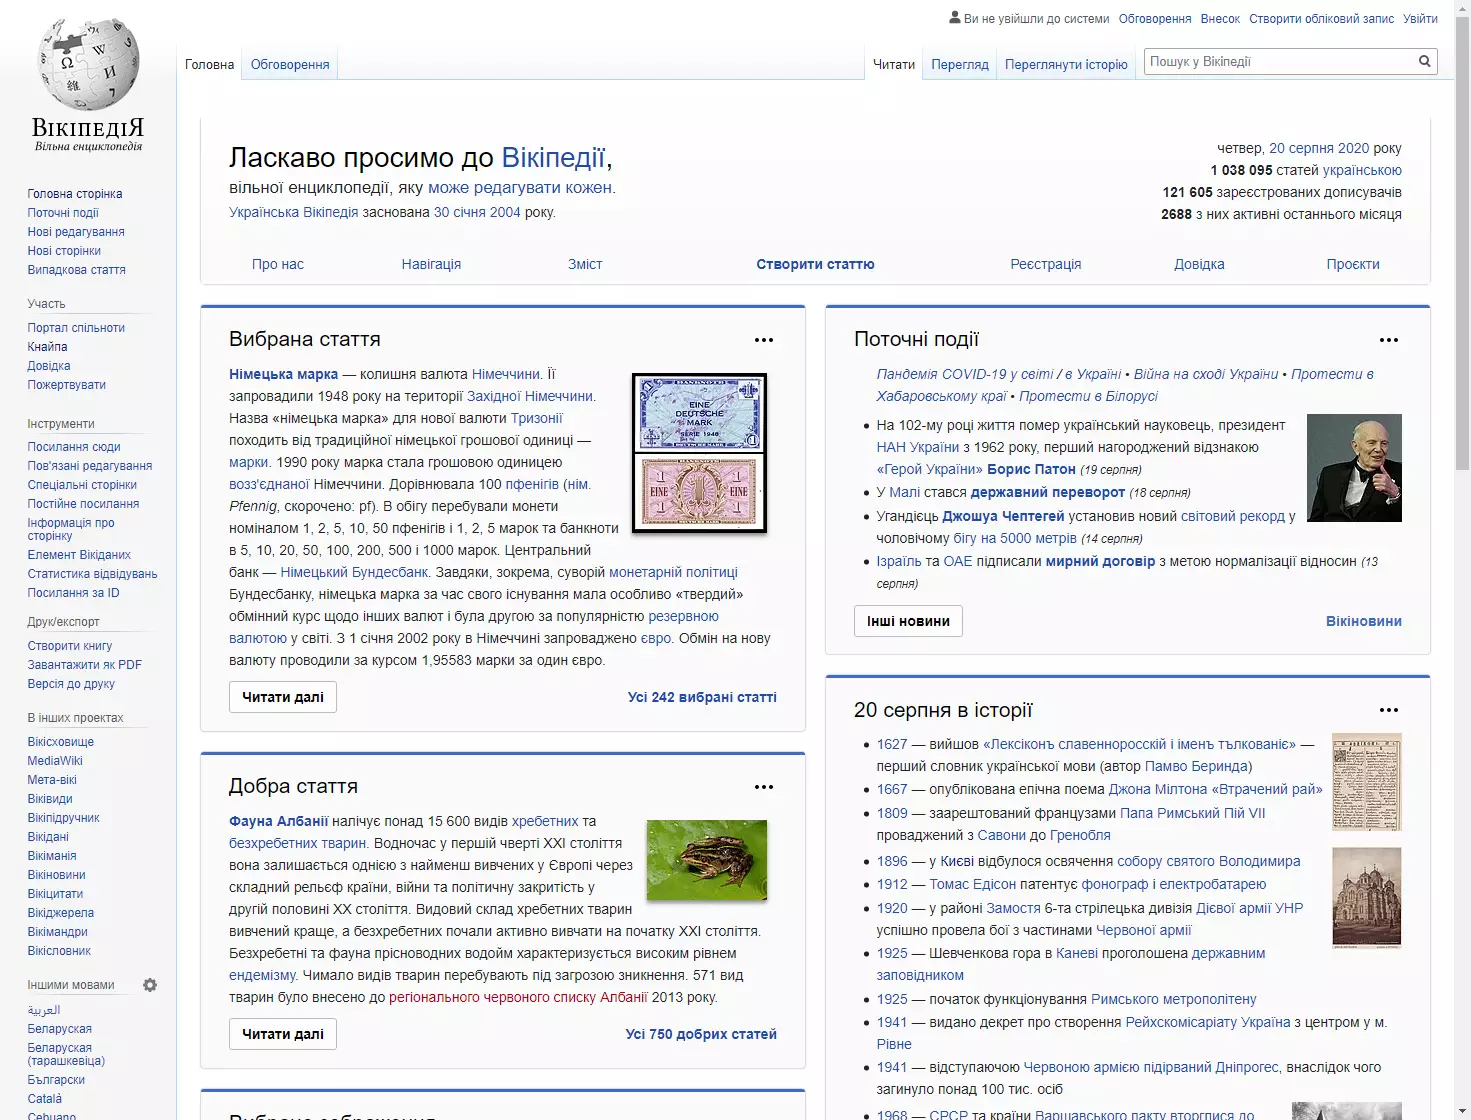 Новый дизайн украинской "Википедии"